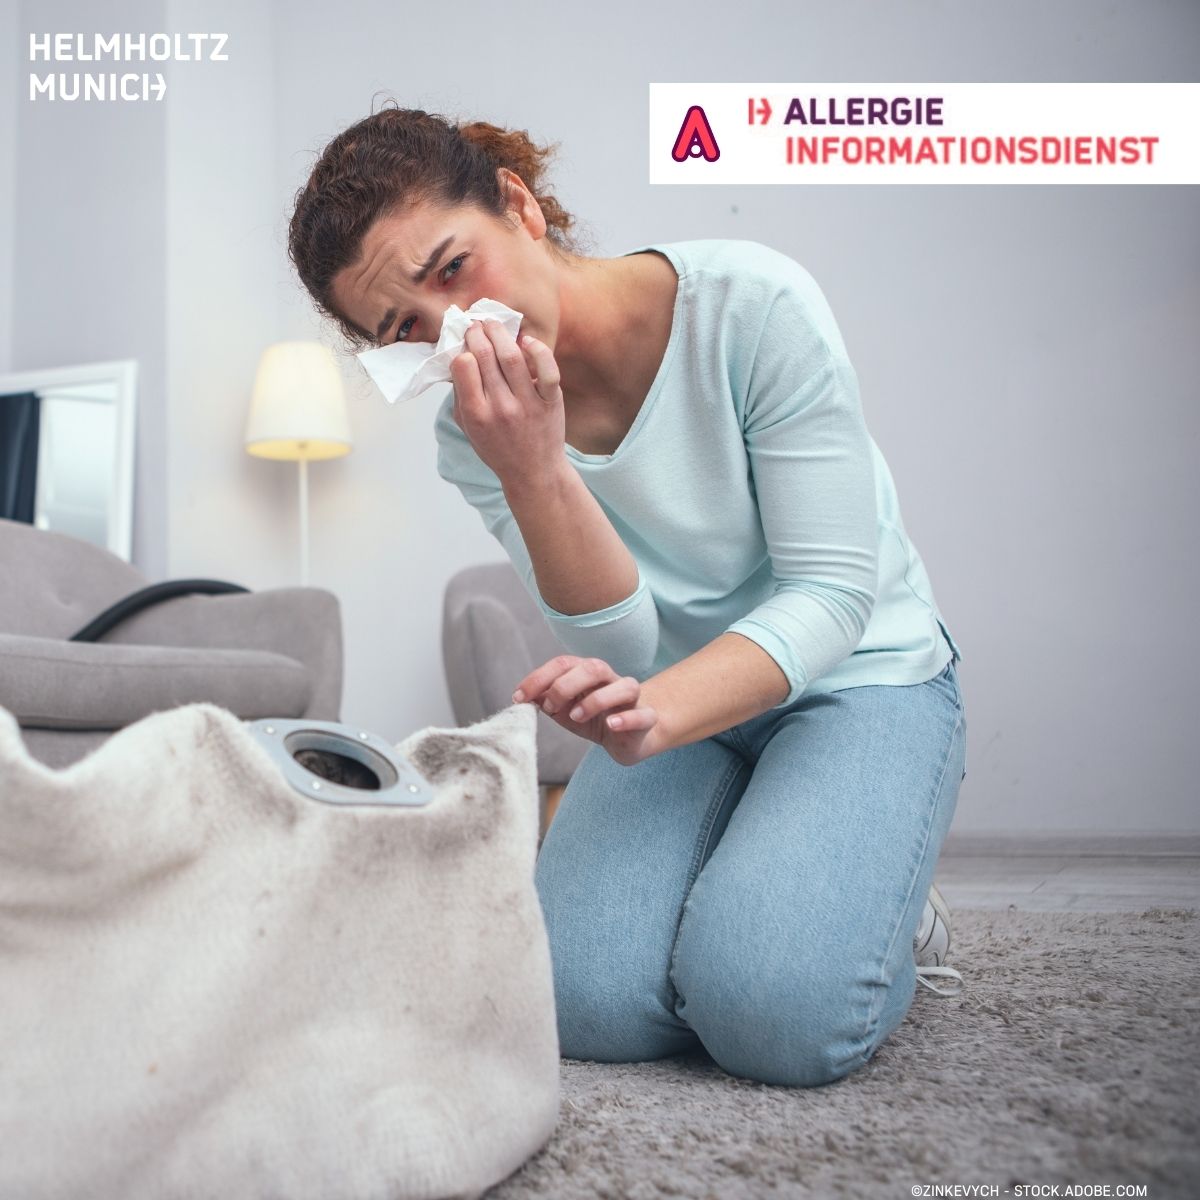 💡Wenn du jetzt allergische Symptome hast, die jenen von #Heuschnupfen ähneln, dann könntest du eine #Allergie gegen #Hausstaubmilben haben.

👉Informiere dich hier über Symptome, Diagnose, Verbreitung, Therapie und Prävention: 
🔗t1p.de/cmzyp